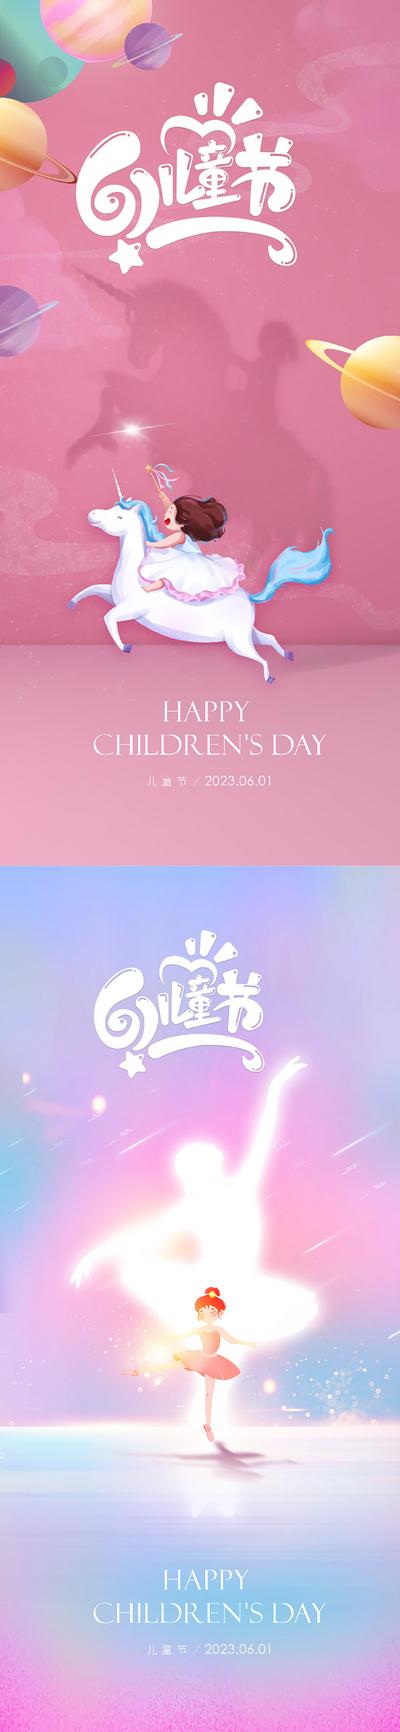 南门网 广告 海报 地产 梦想 六一 61 国际 儿童节 孩子 欢乐 梦幻 飞翔 飞机 城堡 快乐